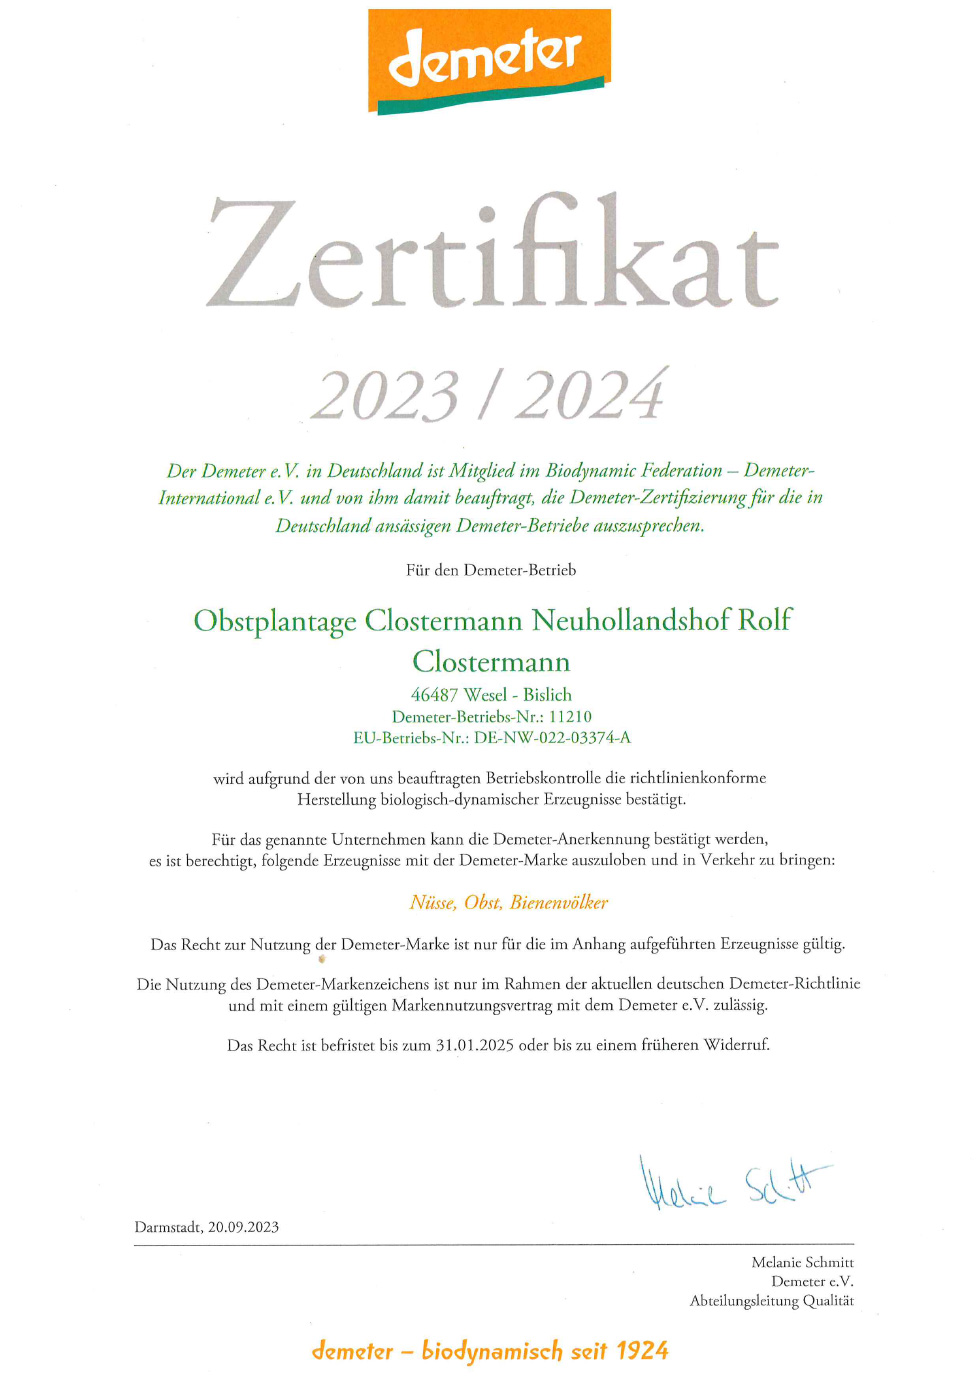 Demeter Zertifikat, Obstplantage Clostermann Neuhollandshof, Rolf Clostermann bis 31.01.2025